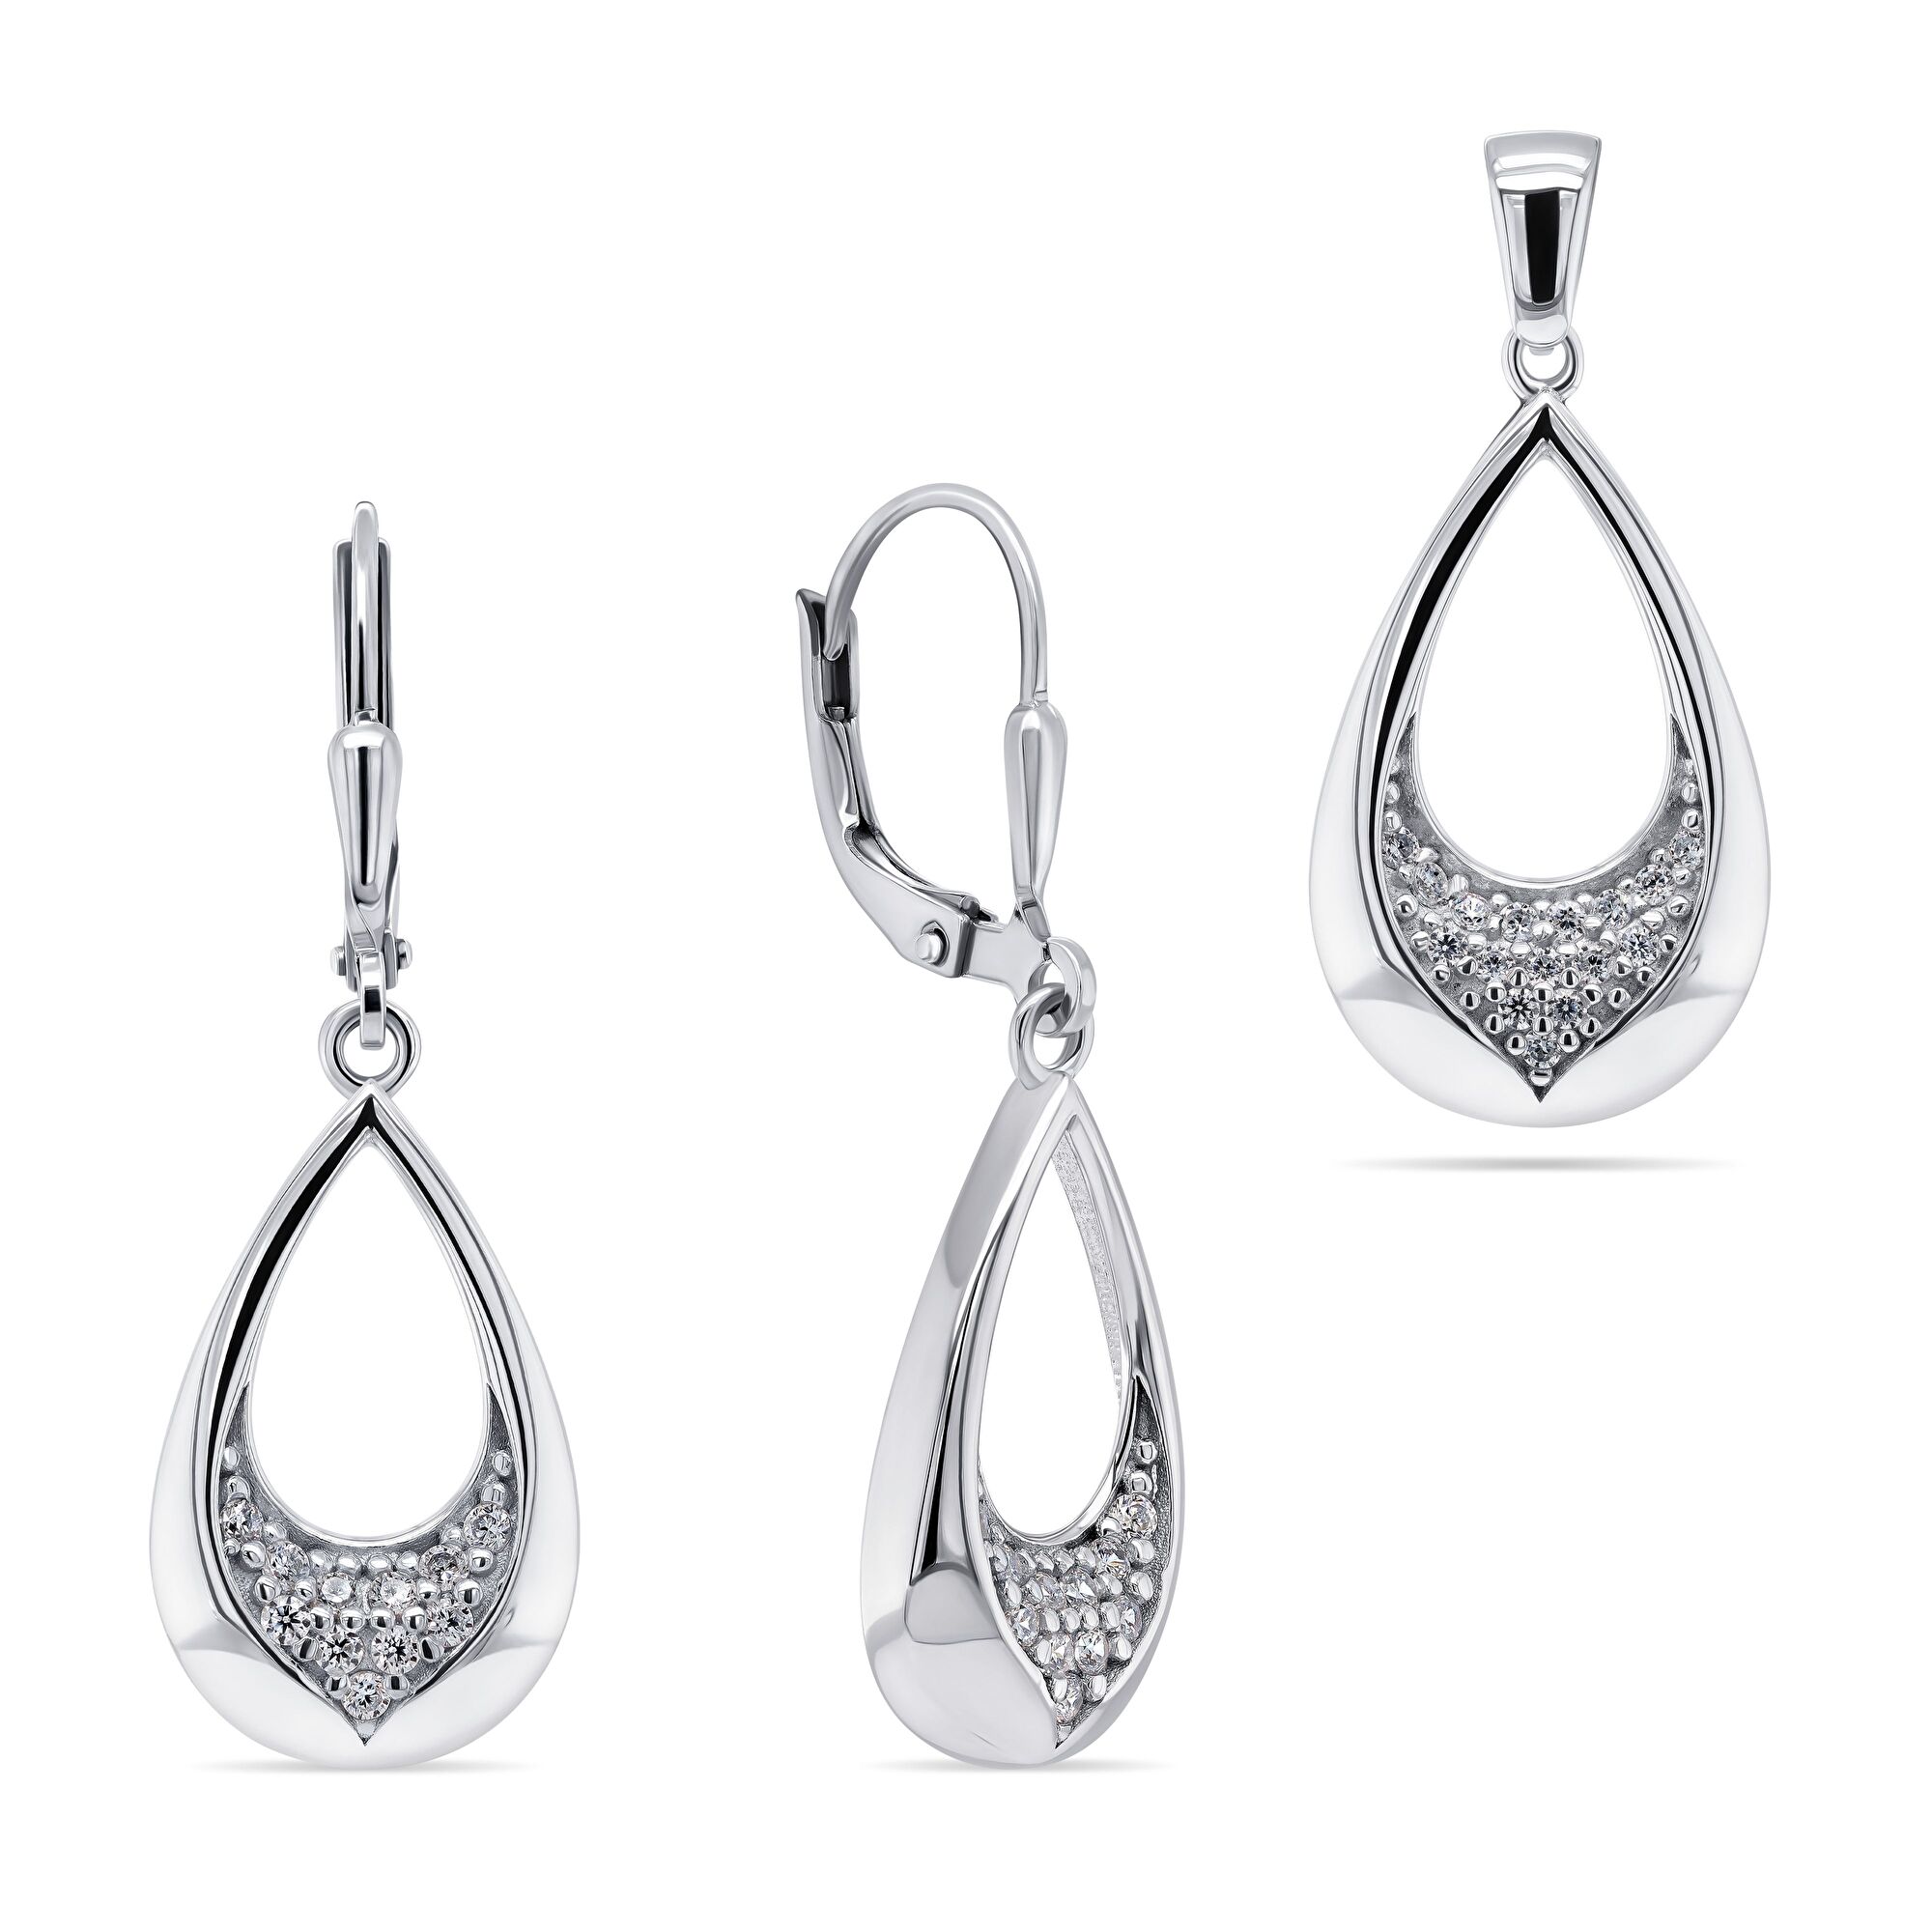 Brilio Silver Něžný stříbrný set šperků SET207W (přívěsek, náušnice)